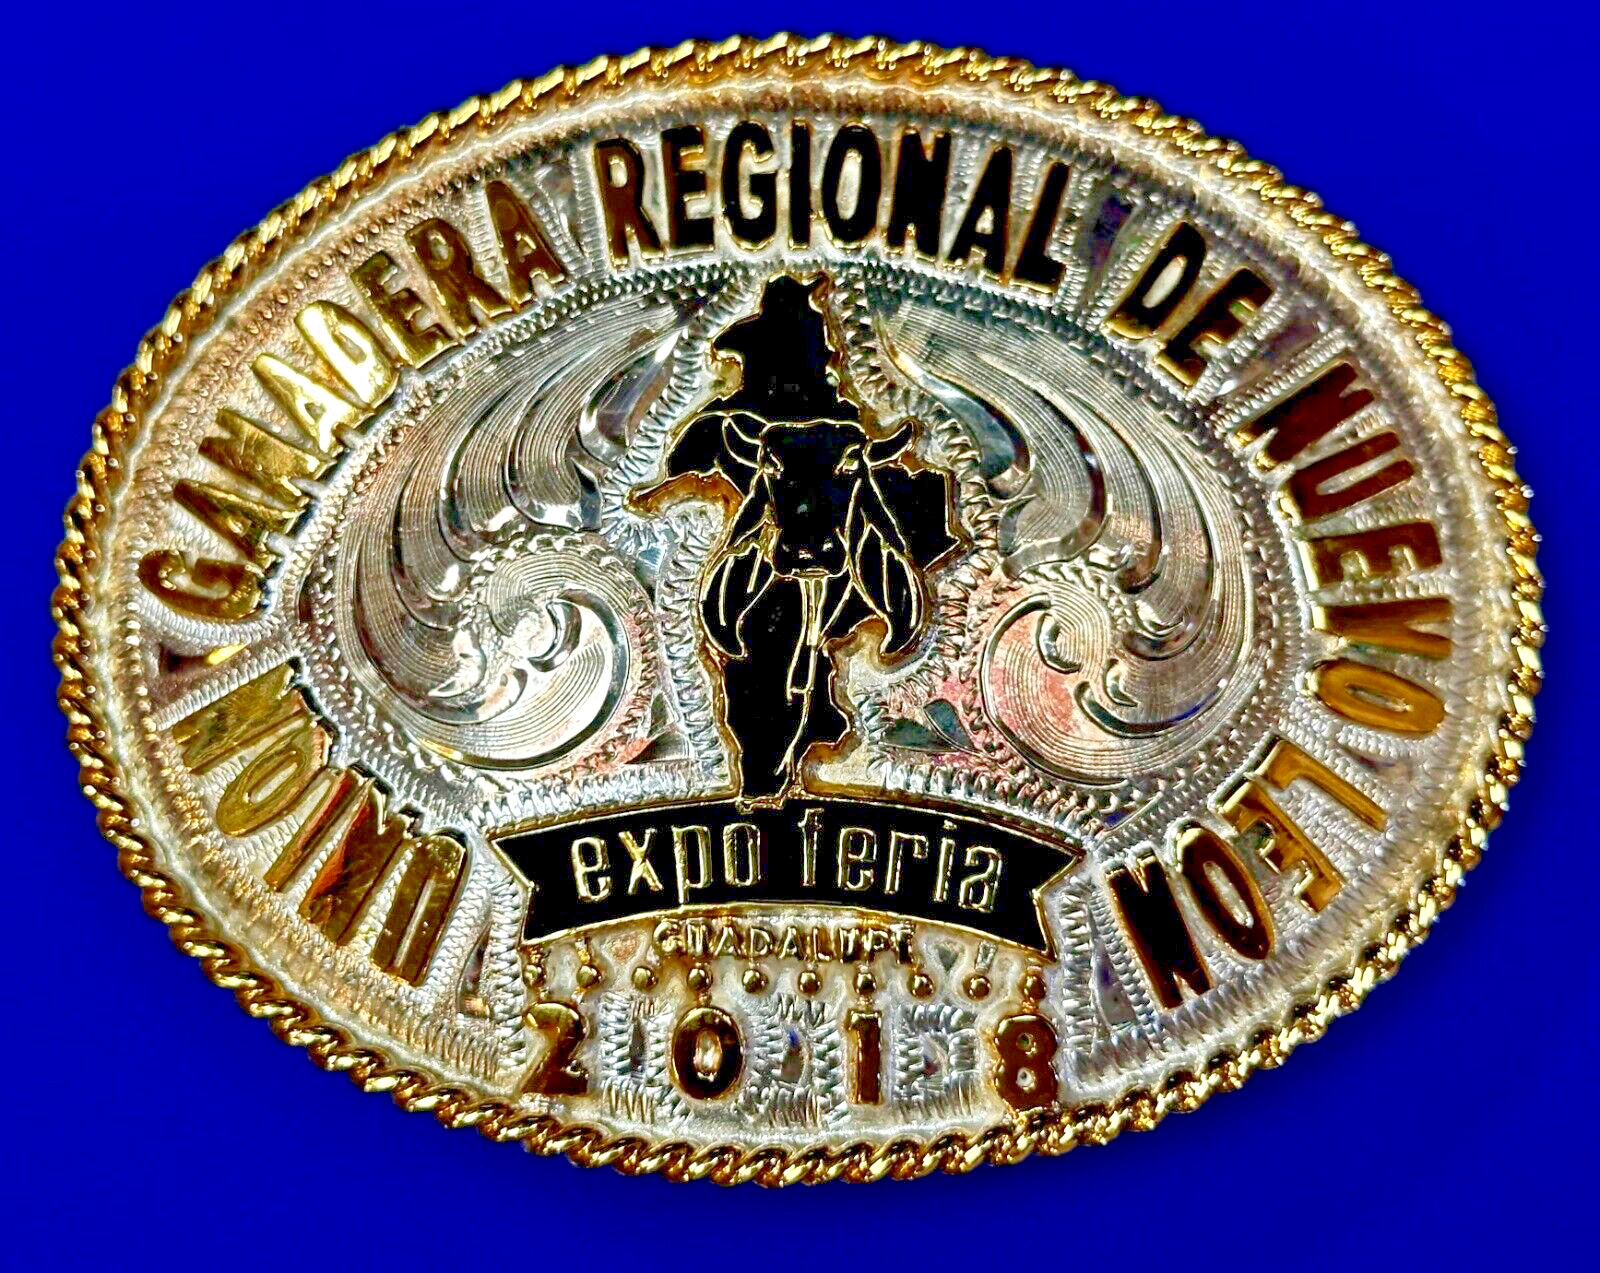 Union Ganadera Regional De Nuevo Leon Expo Series 2018 Trophy Award Belt Buckle